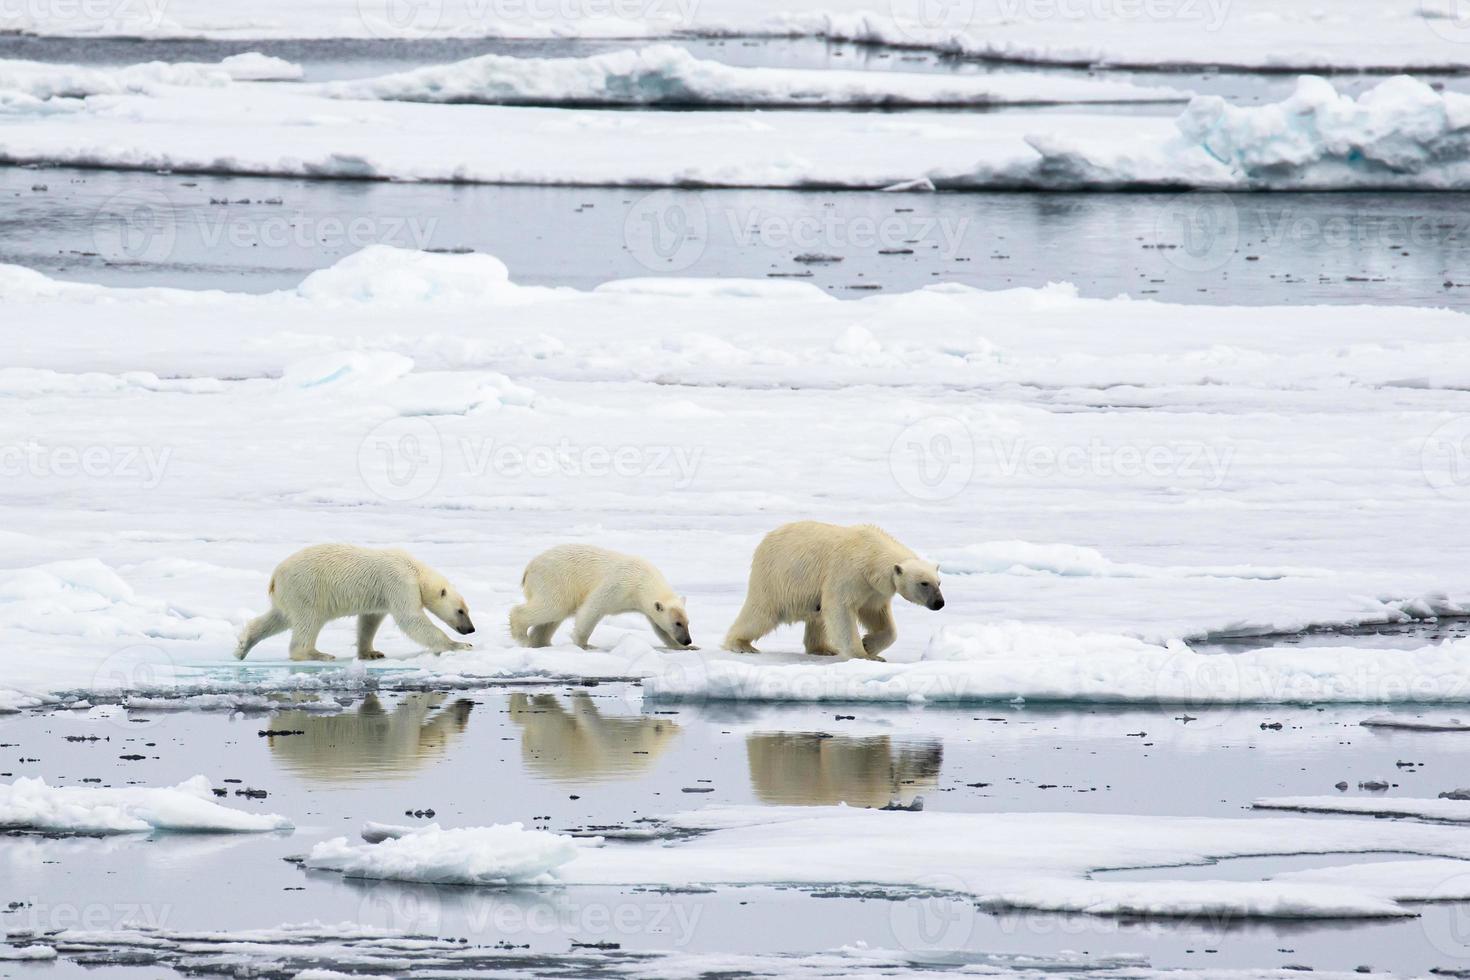 oso polar madre, con dos cachorros en el hielo marino en el ártico foto